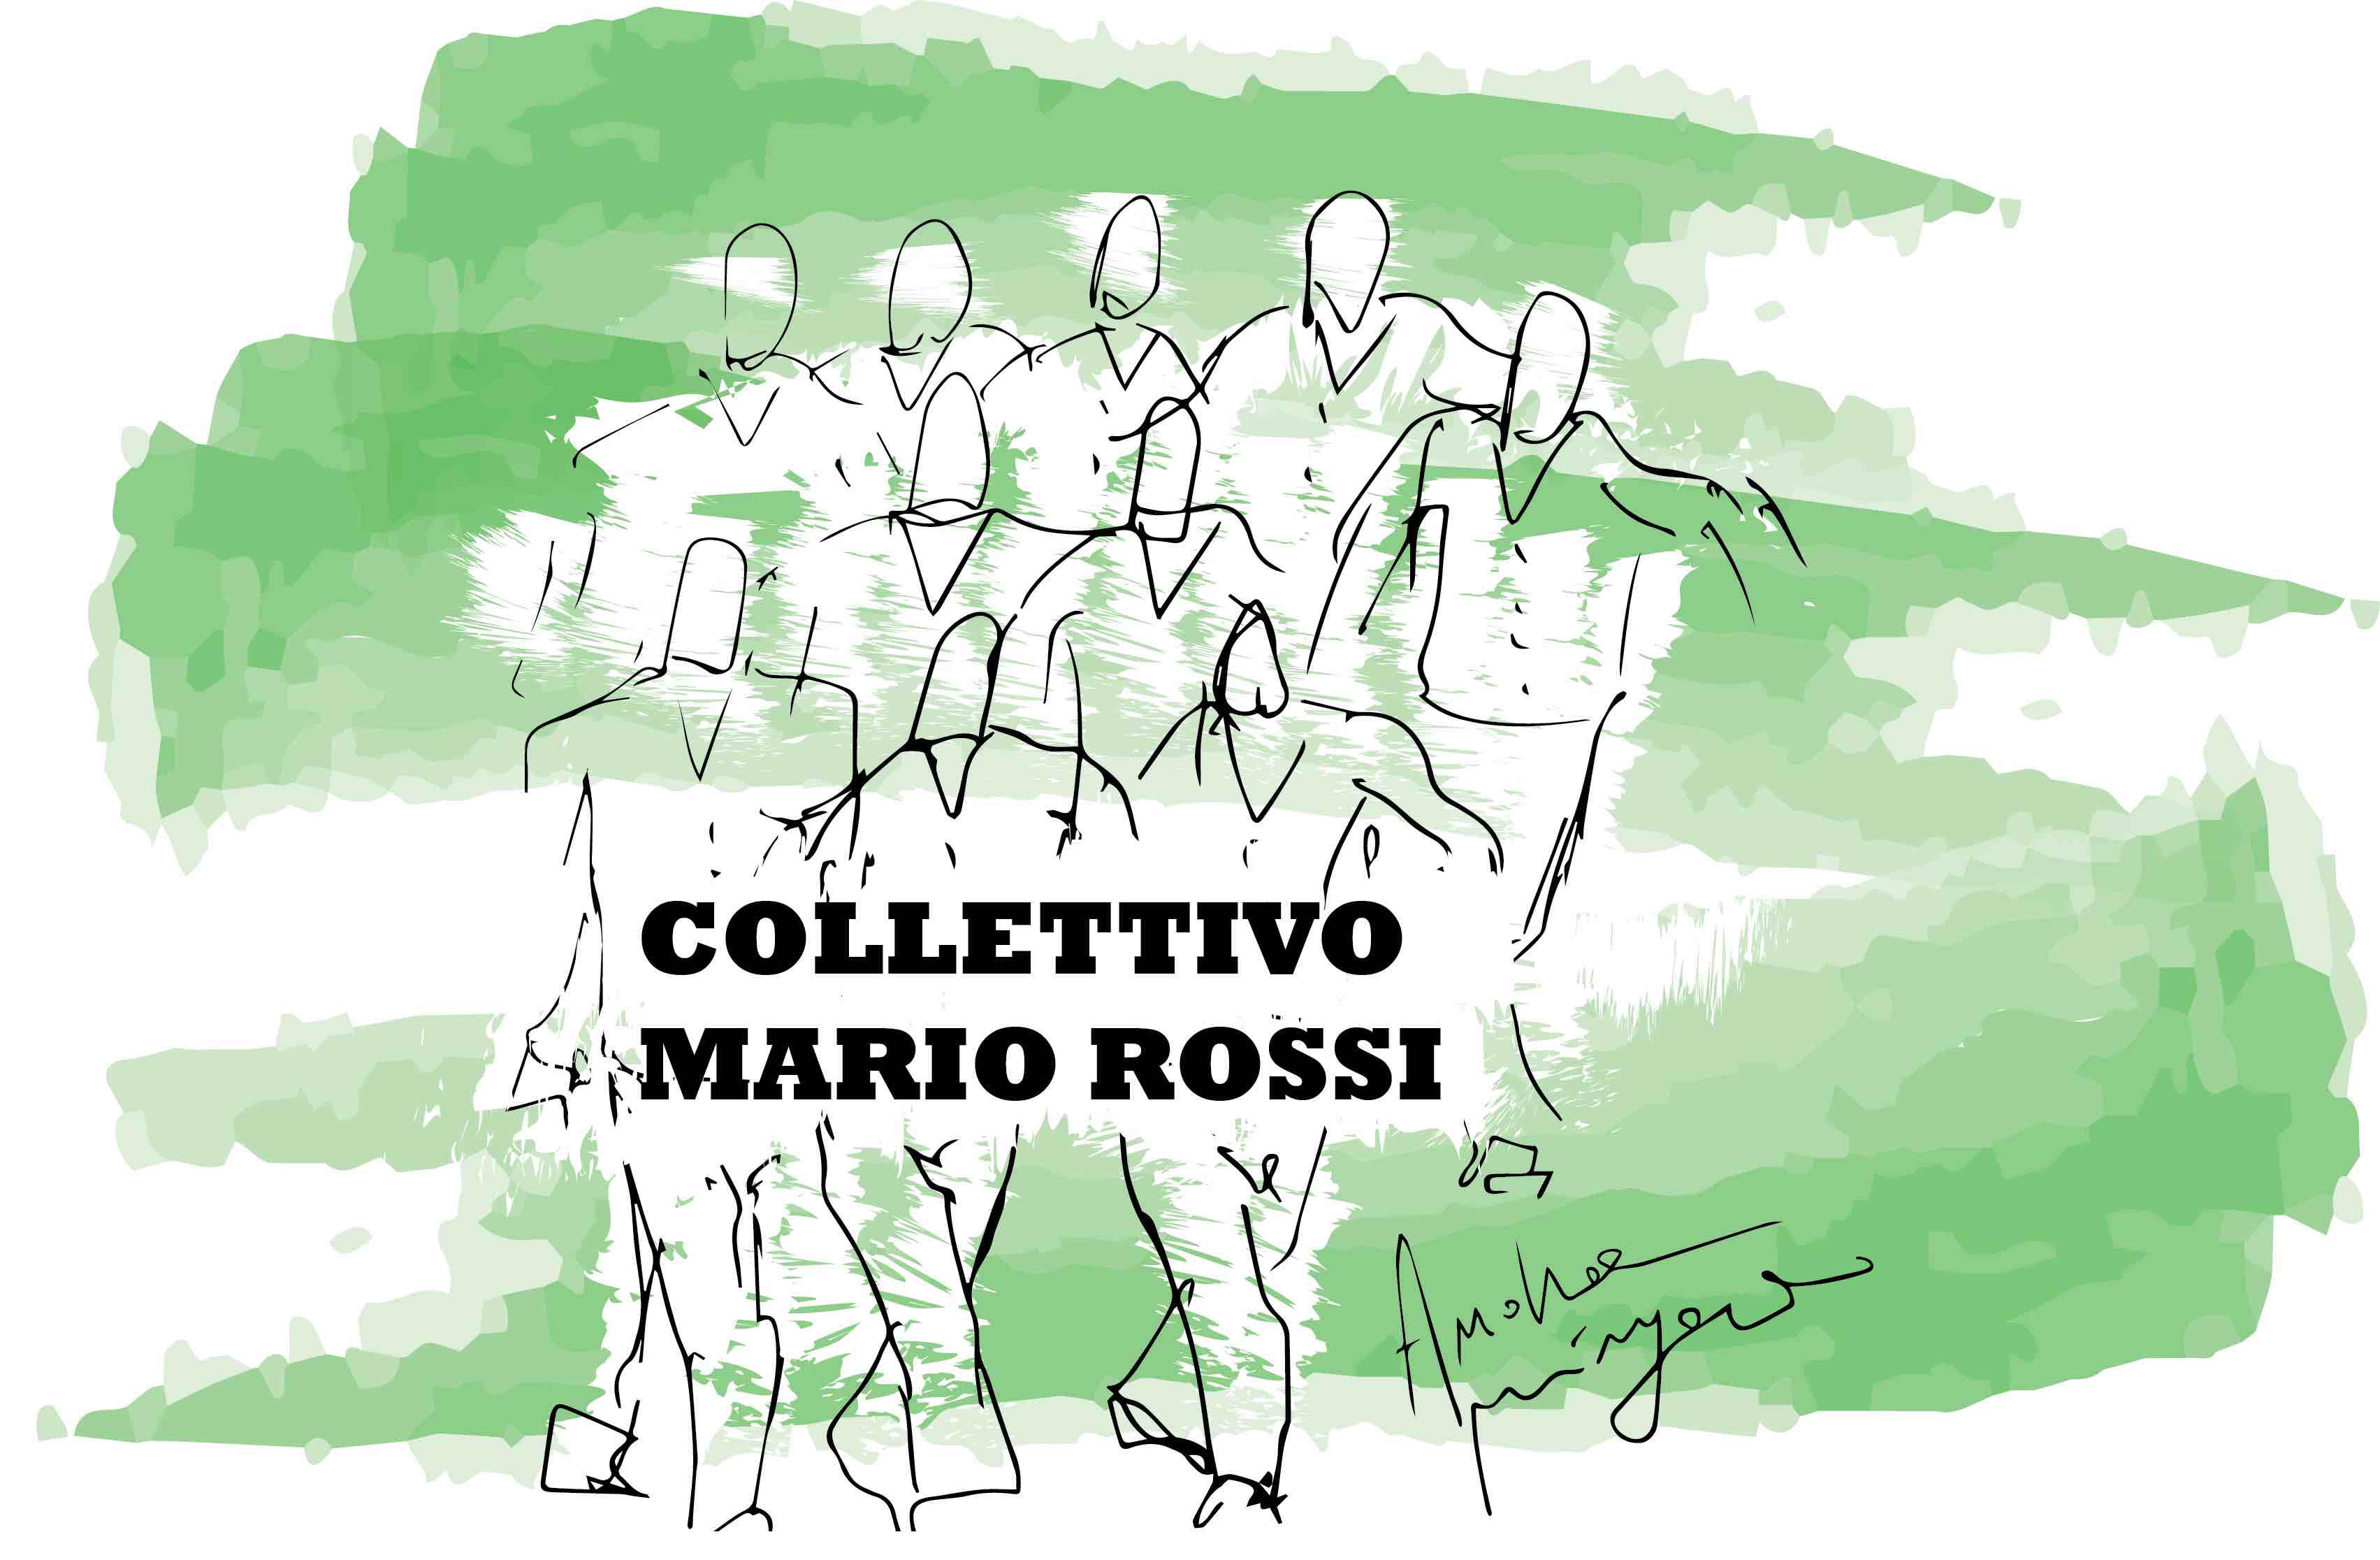 Esce il nuovo disco del Collettivo Mario Rossi